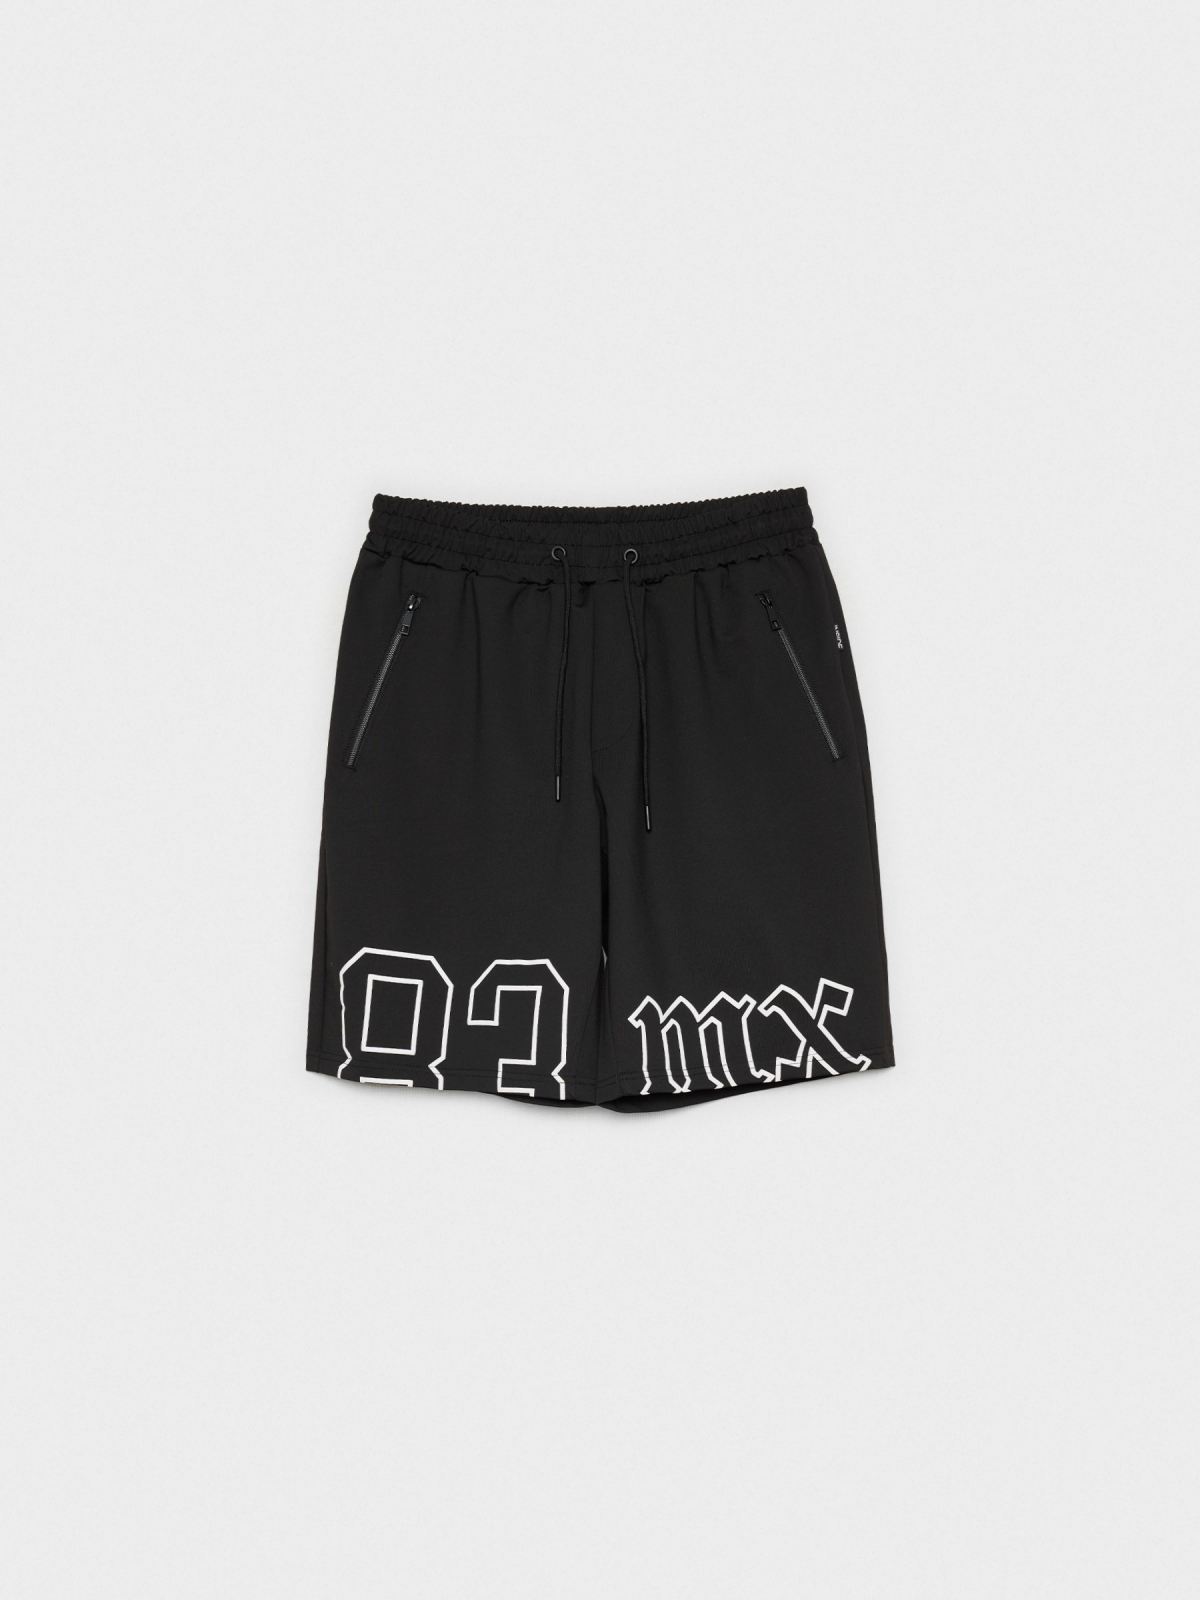  Printed Bermuda jogger shorts black